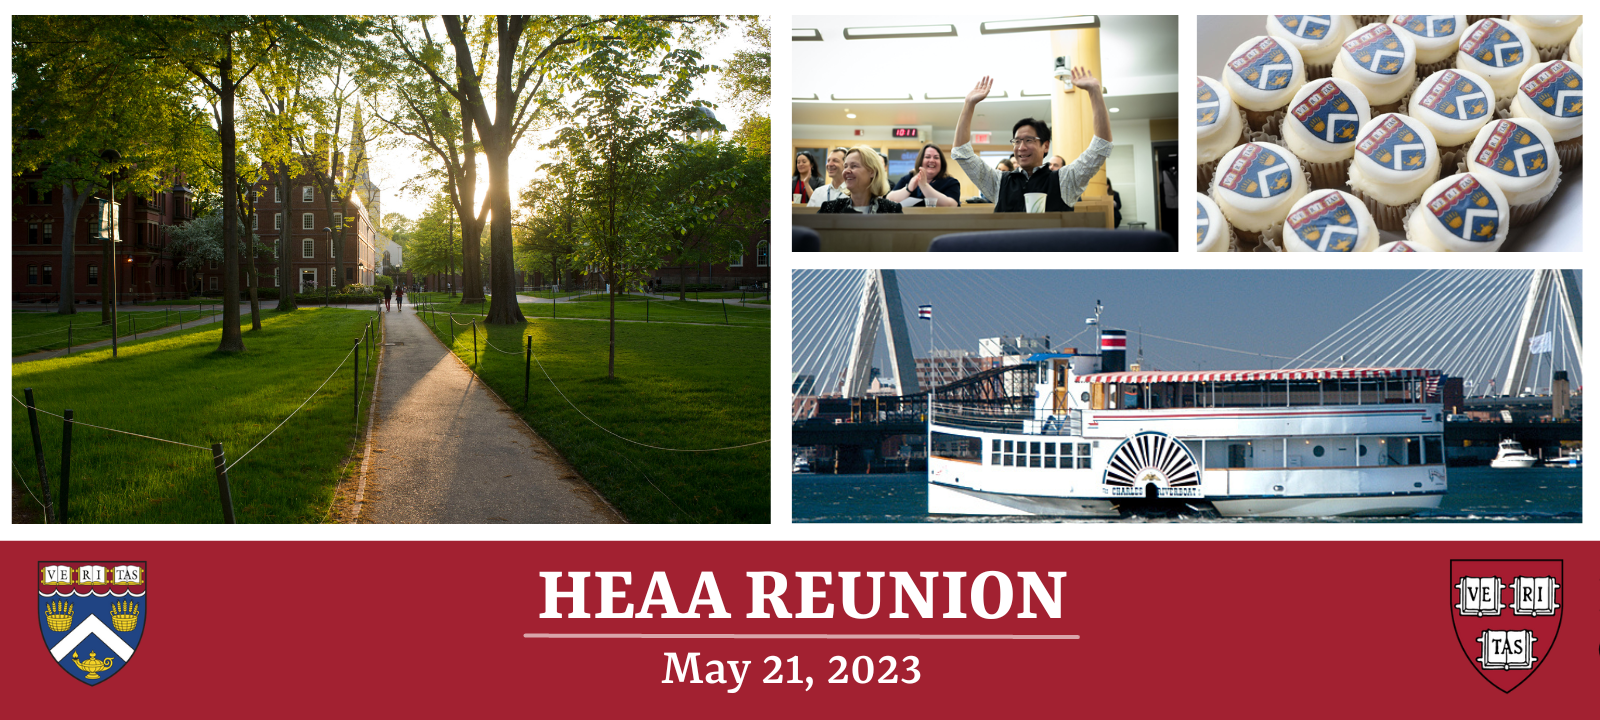 HEAA Reunion 2023 v2